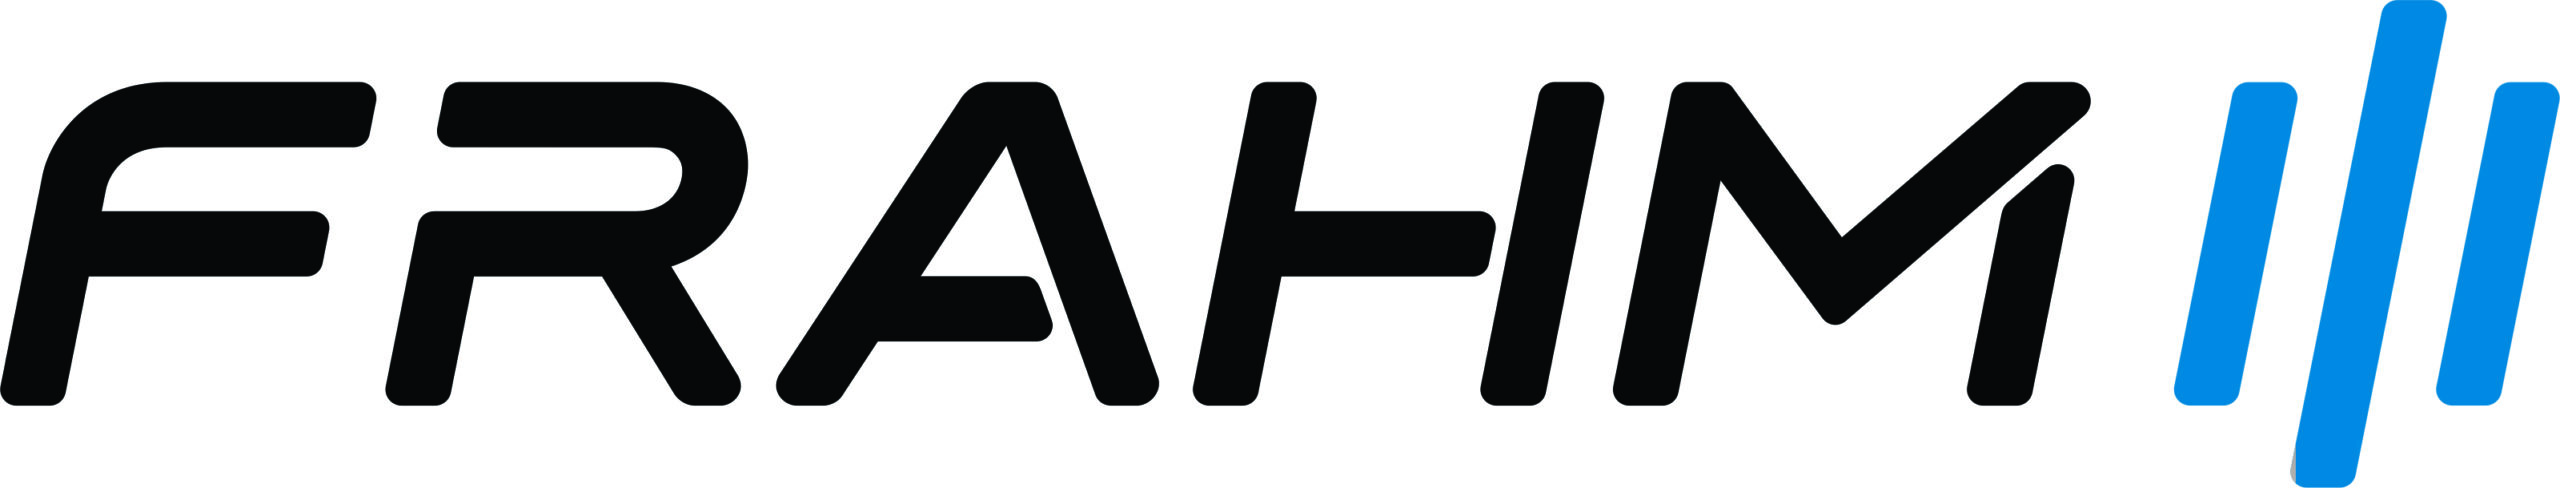 Logomarca do fornecedor Frahm